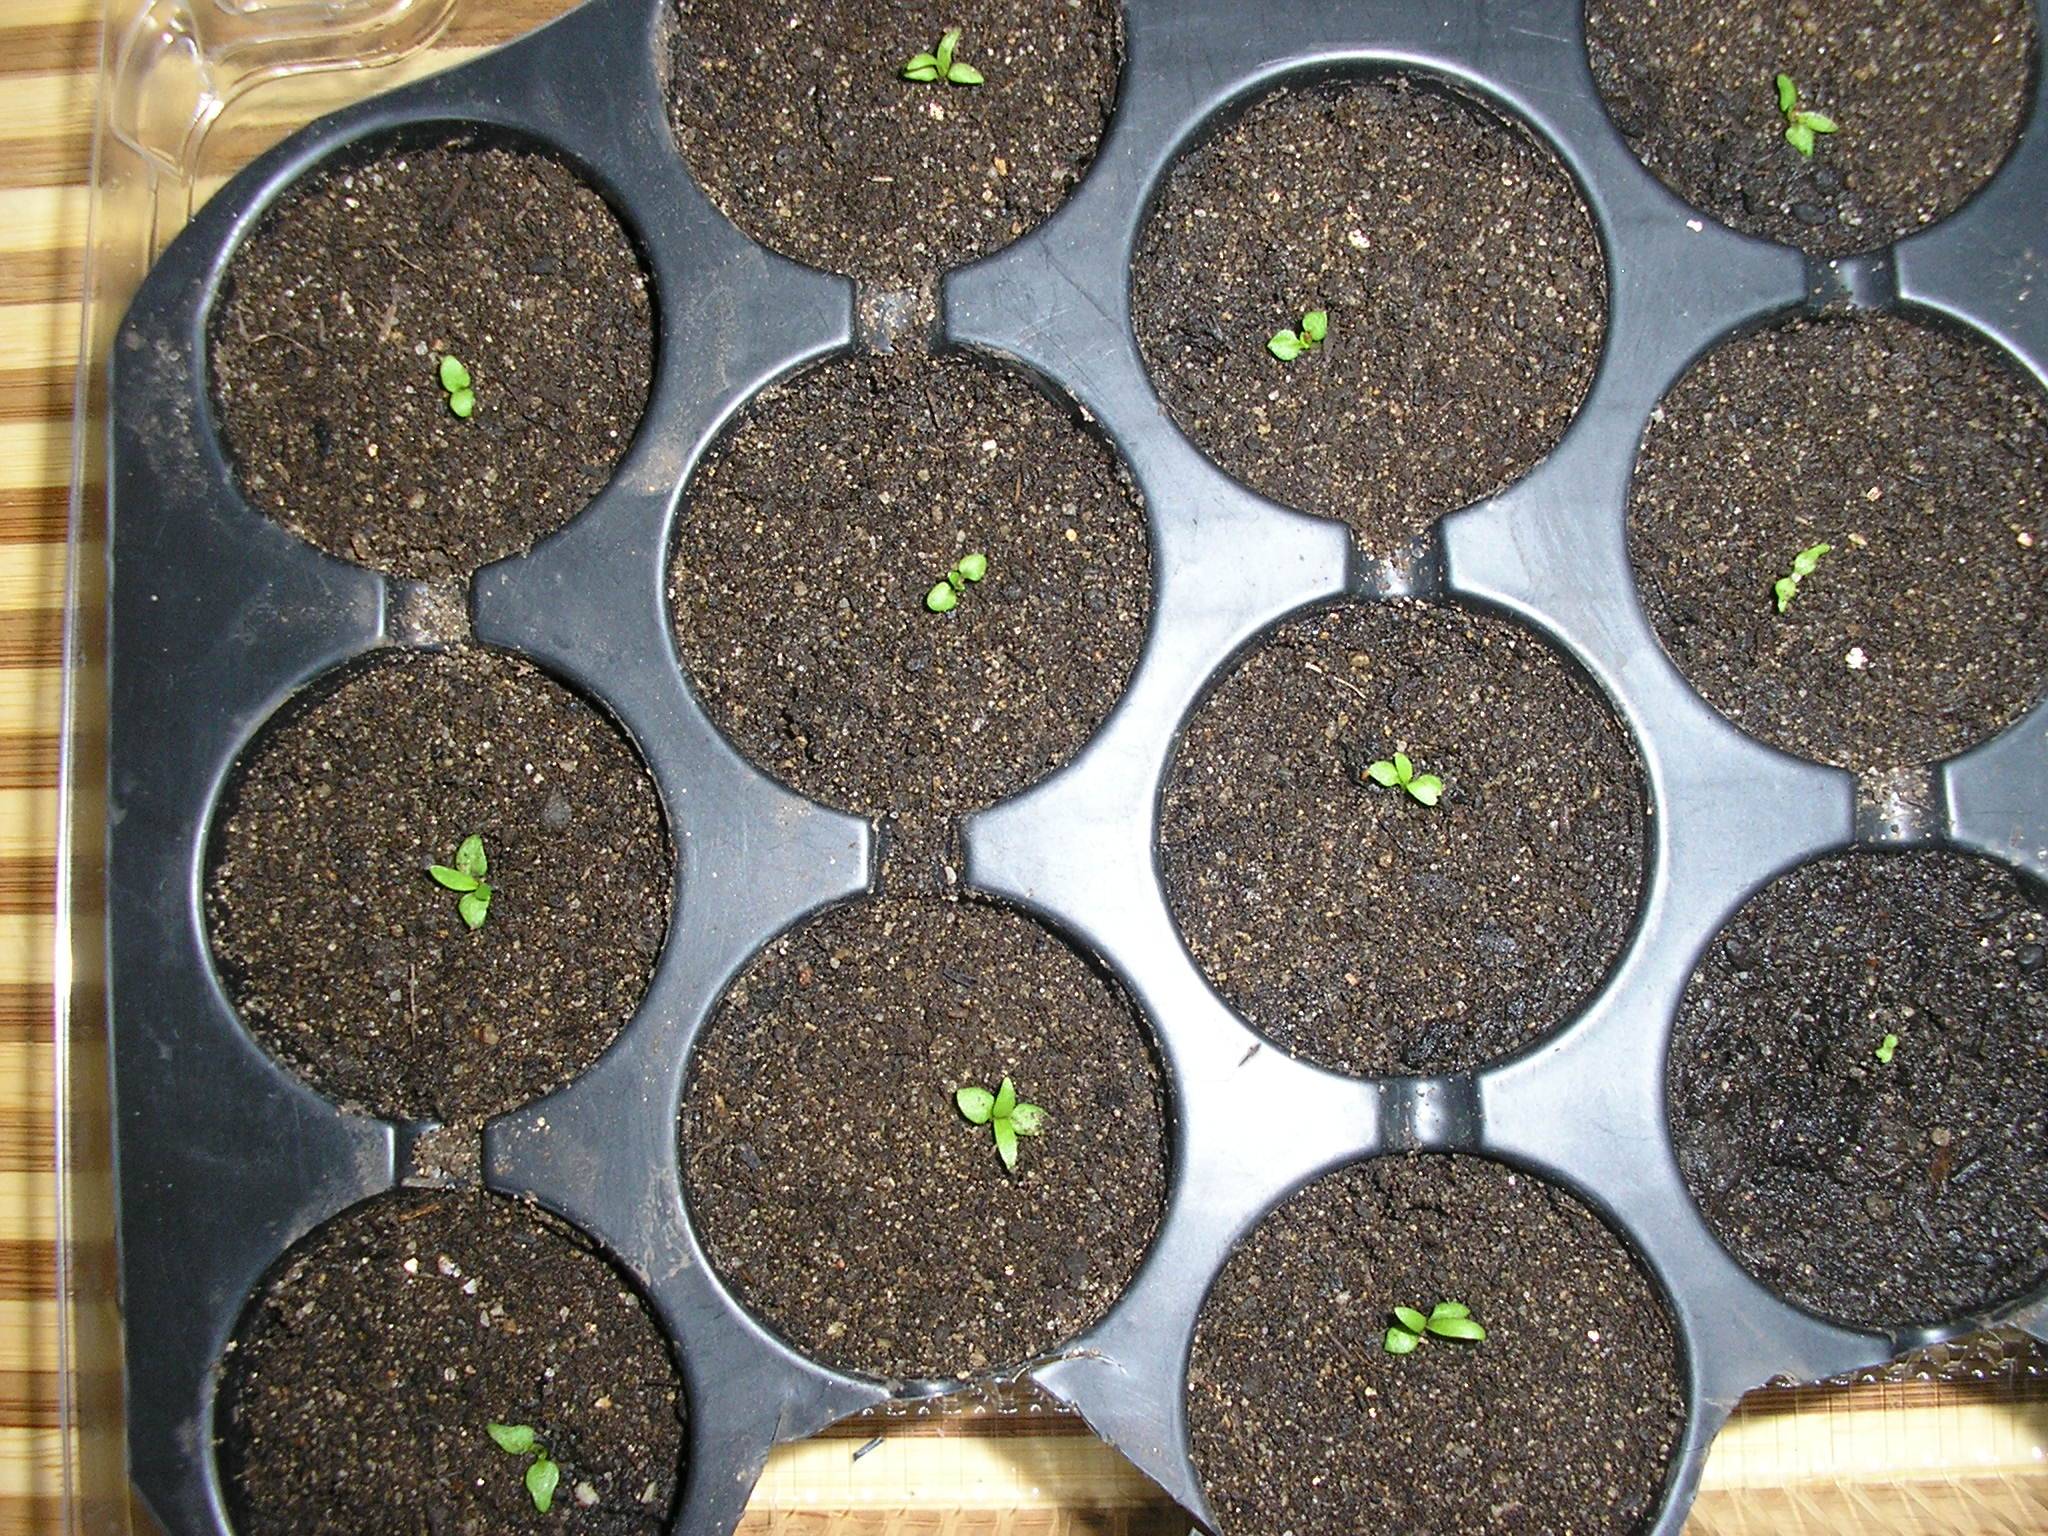 Выращивание гортензии из семян в домашних условиях: как выглядят семена, как собрать и посадить, уход, размножение, фото | сортовед